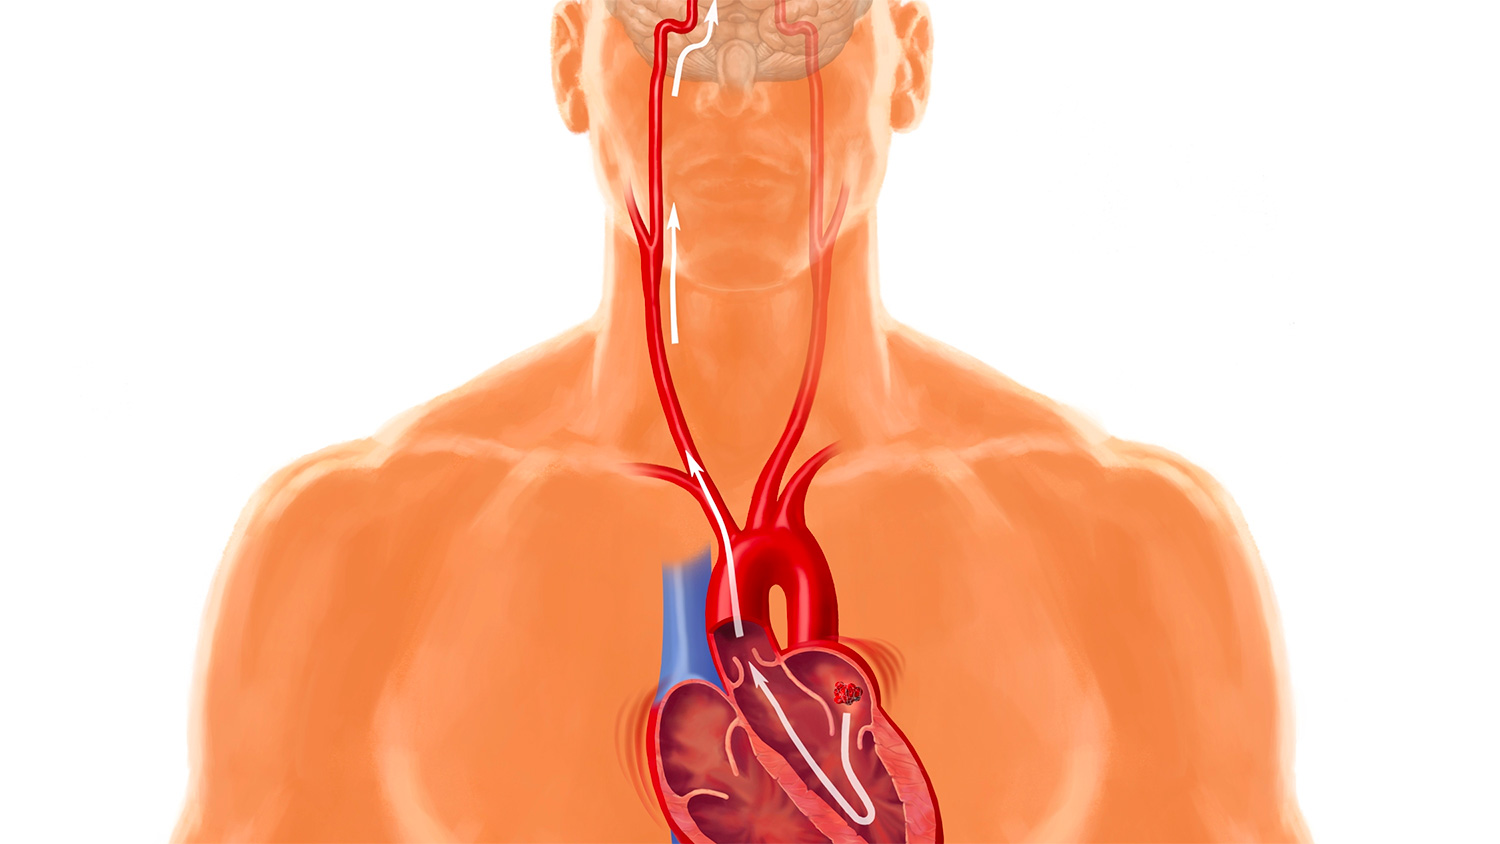 Actividad física, estado cardiorrespiratorio y resultados cardiovasculares en individuos con fibrilación auricular: el estudio HUNT